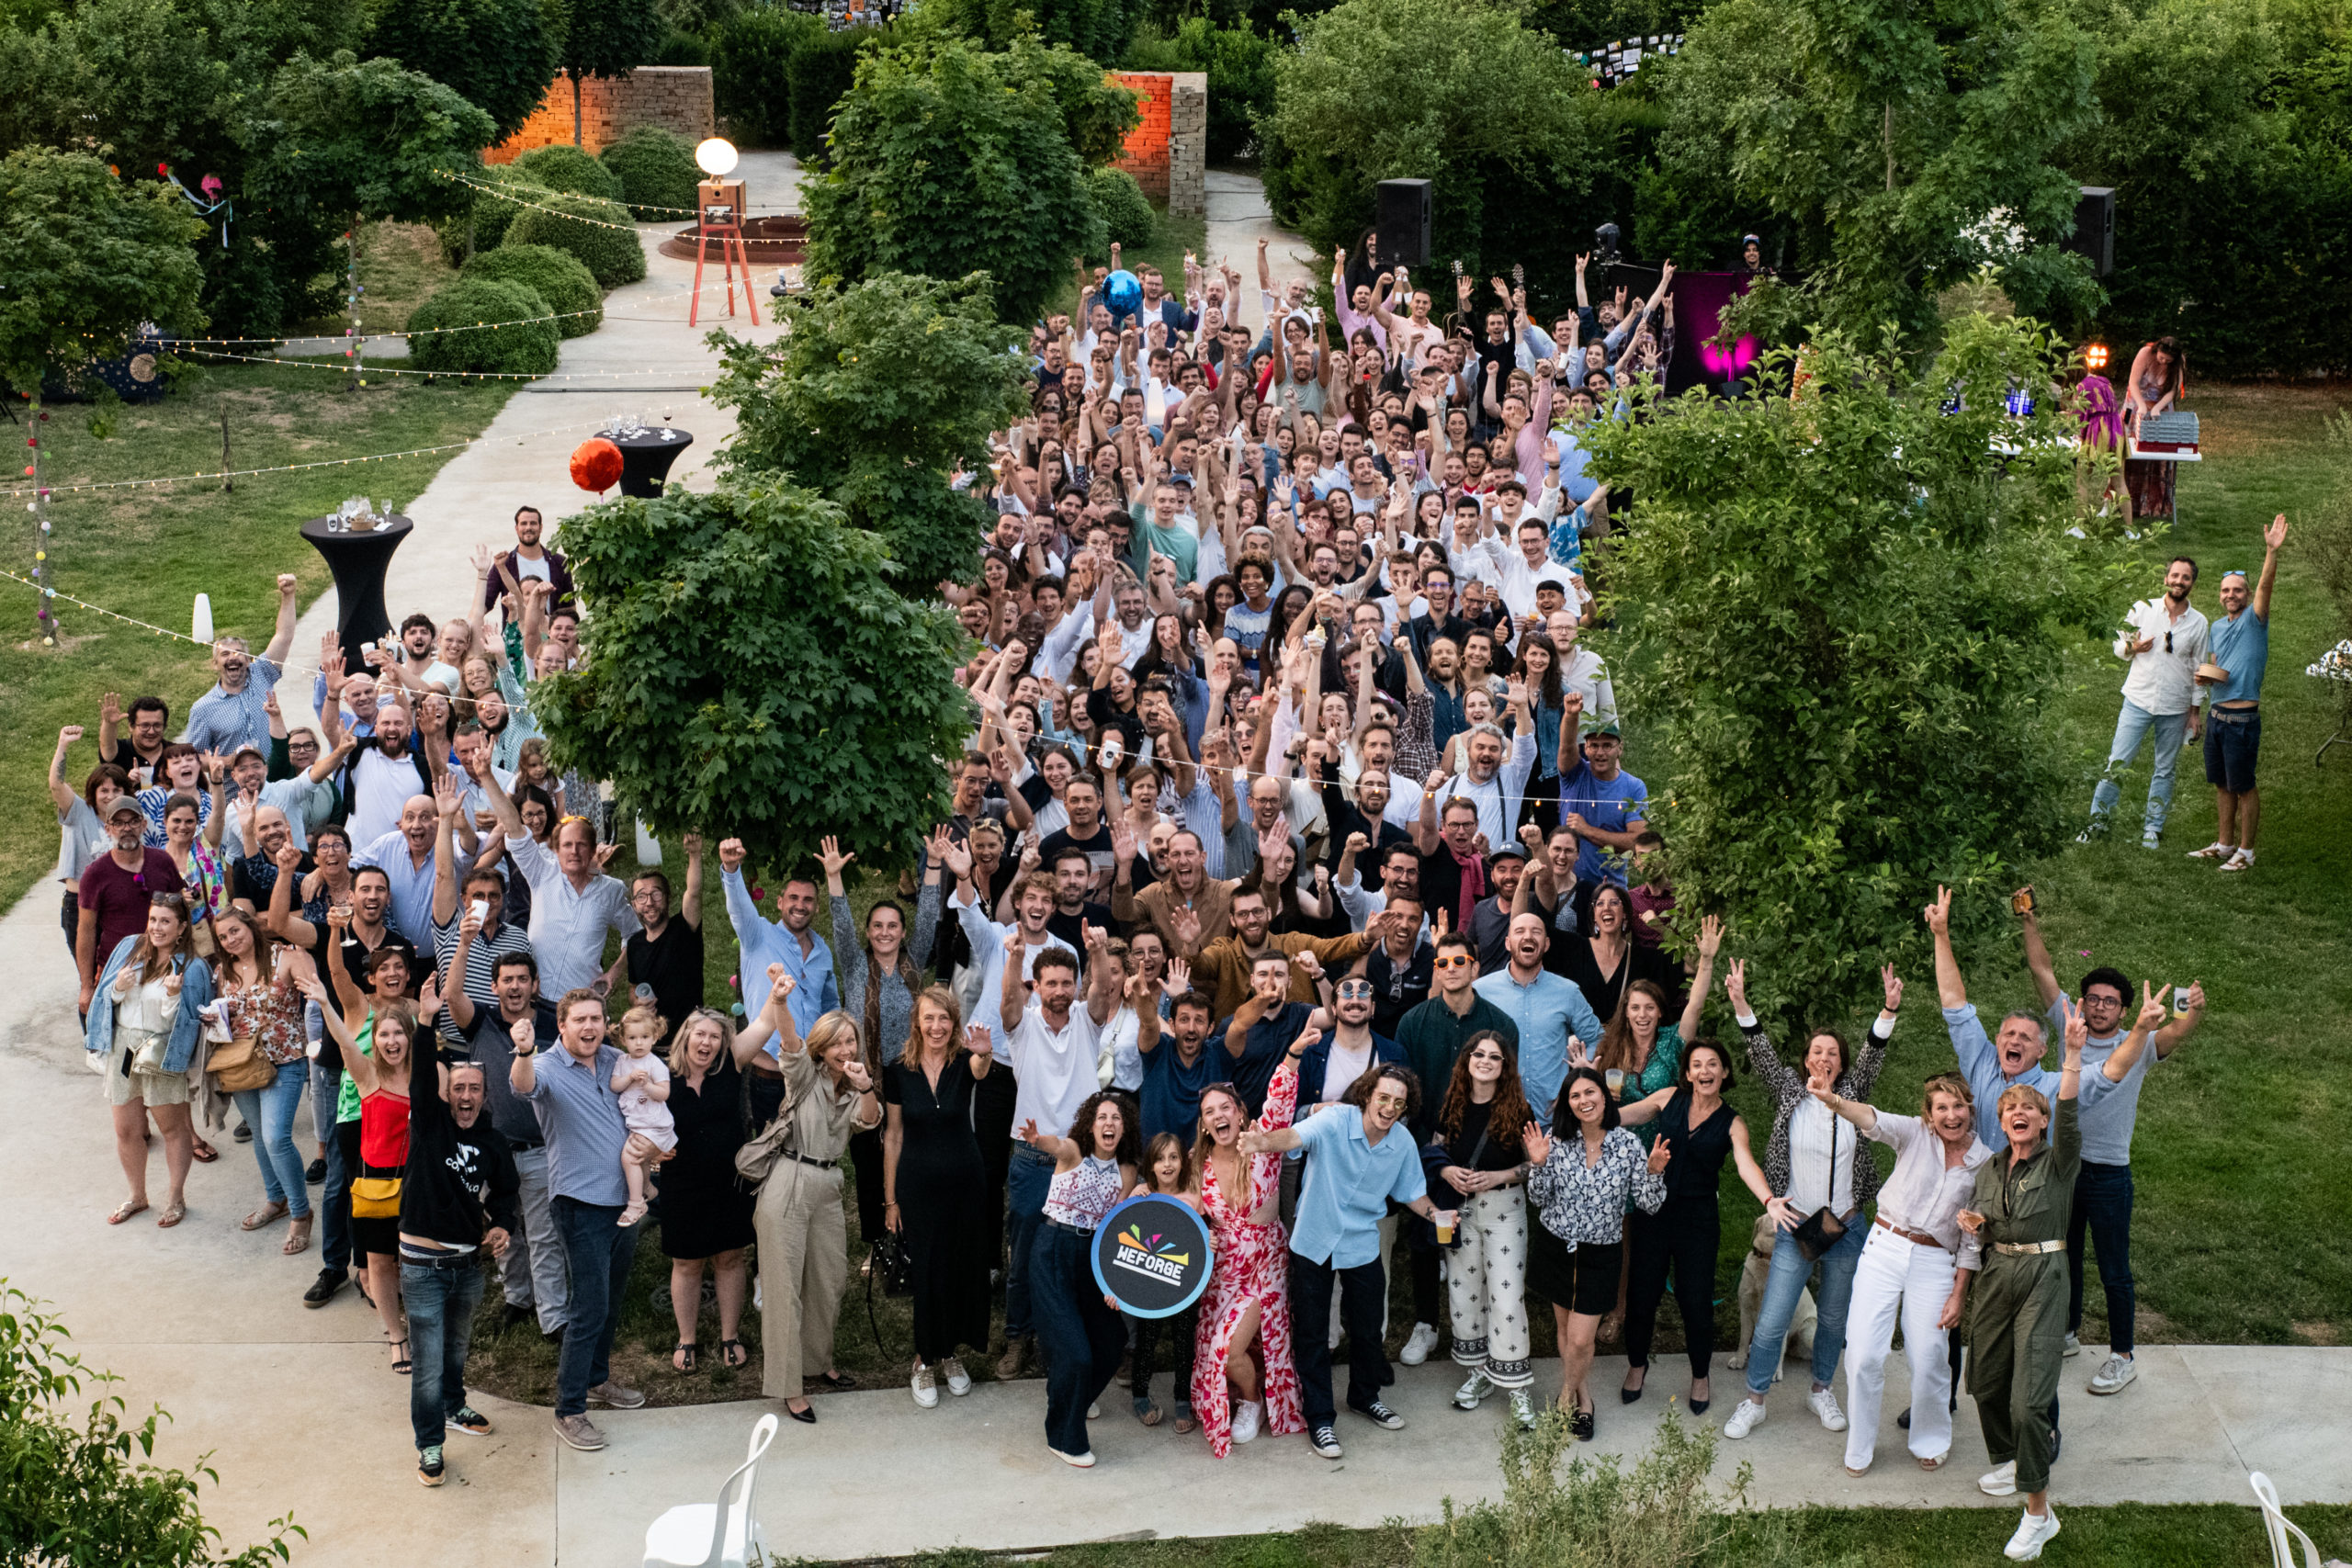  WeForge célèbre 10 ans d’Entrepreneuriat et d’étincelles